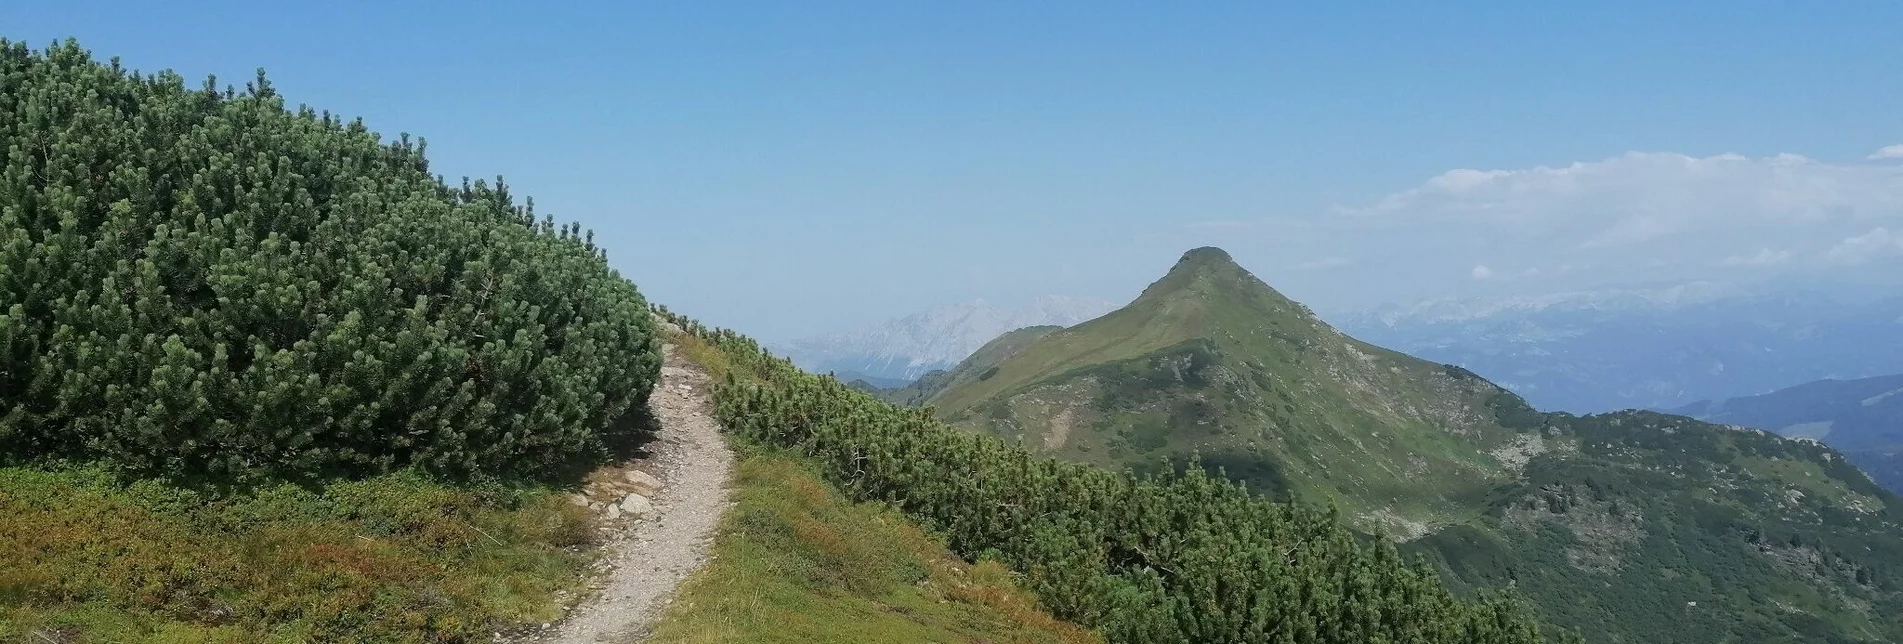 Hiking route 2-Summit-Tour Karlspitz and Schreinl - Touren-Impression #1 | © Erlebnisregion Schladming-Dachstein